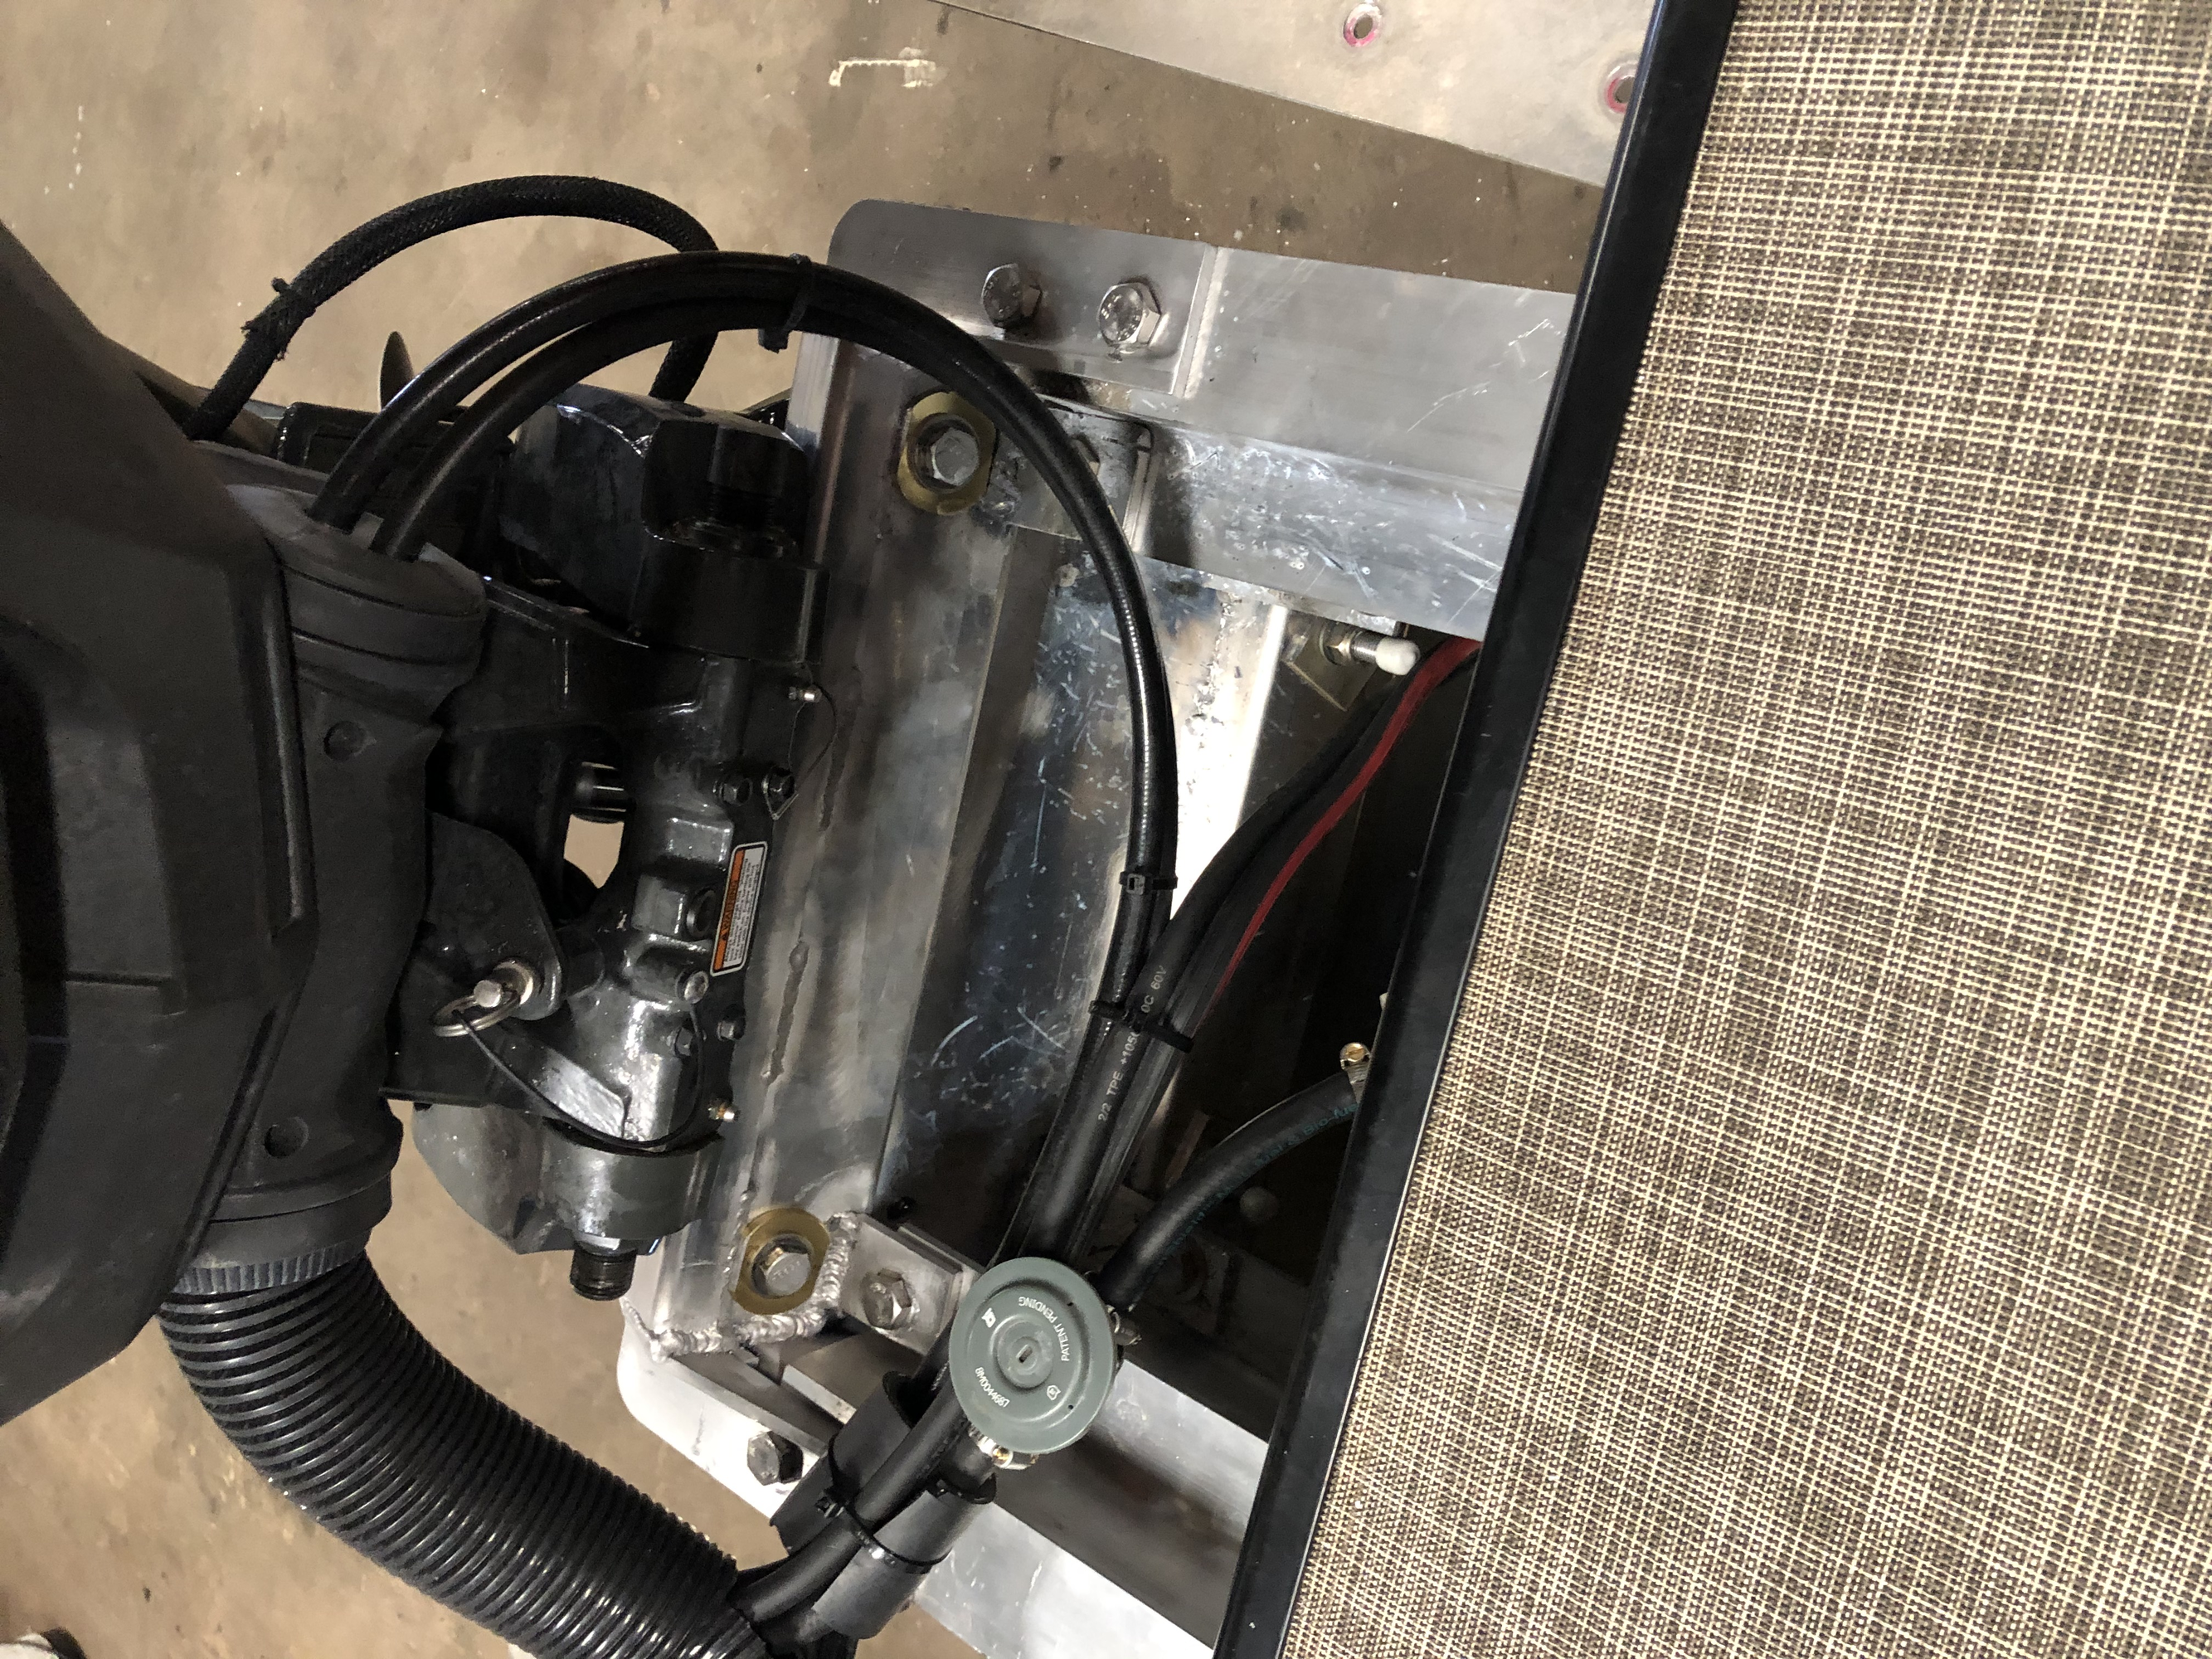 Motor installed on Poly3rdTube™ Kit W/Motor Mount